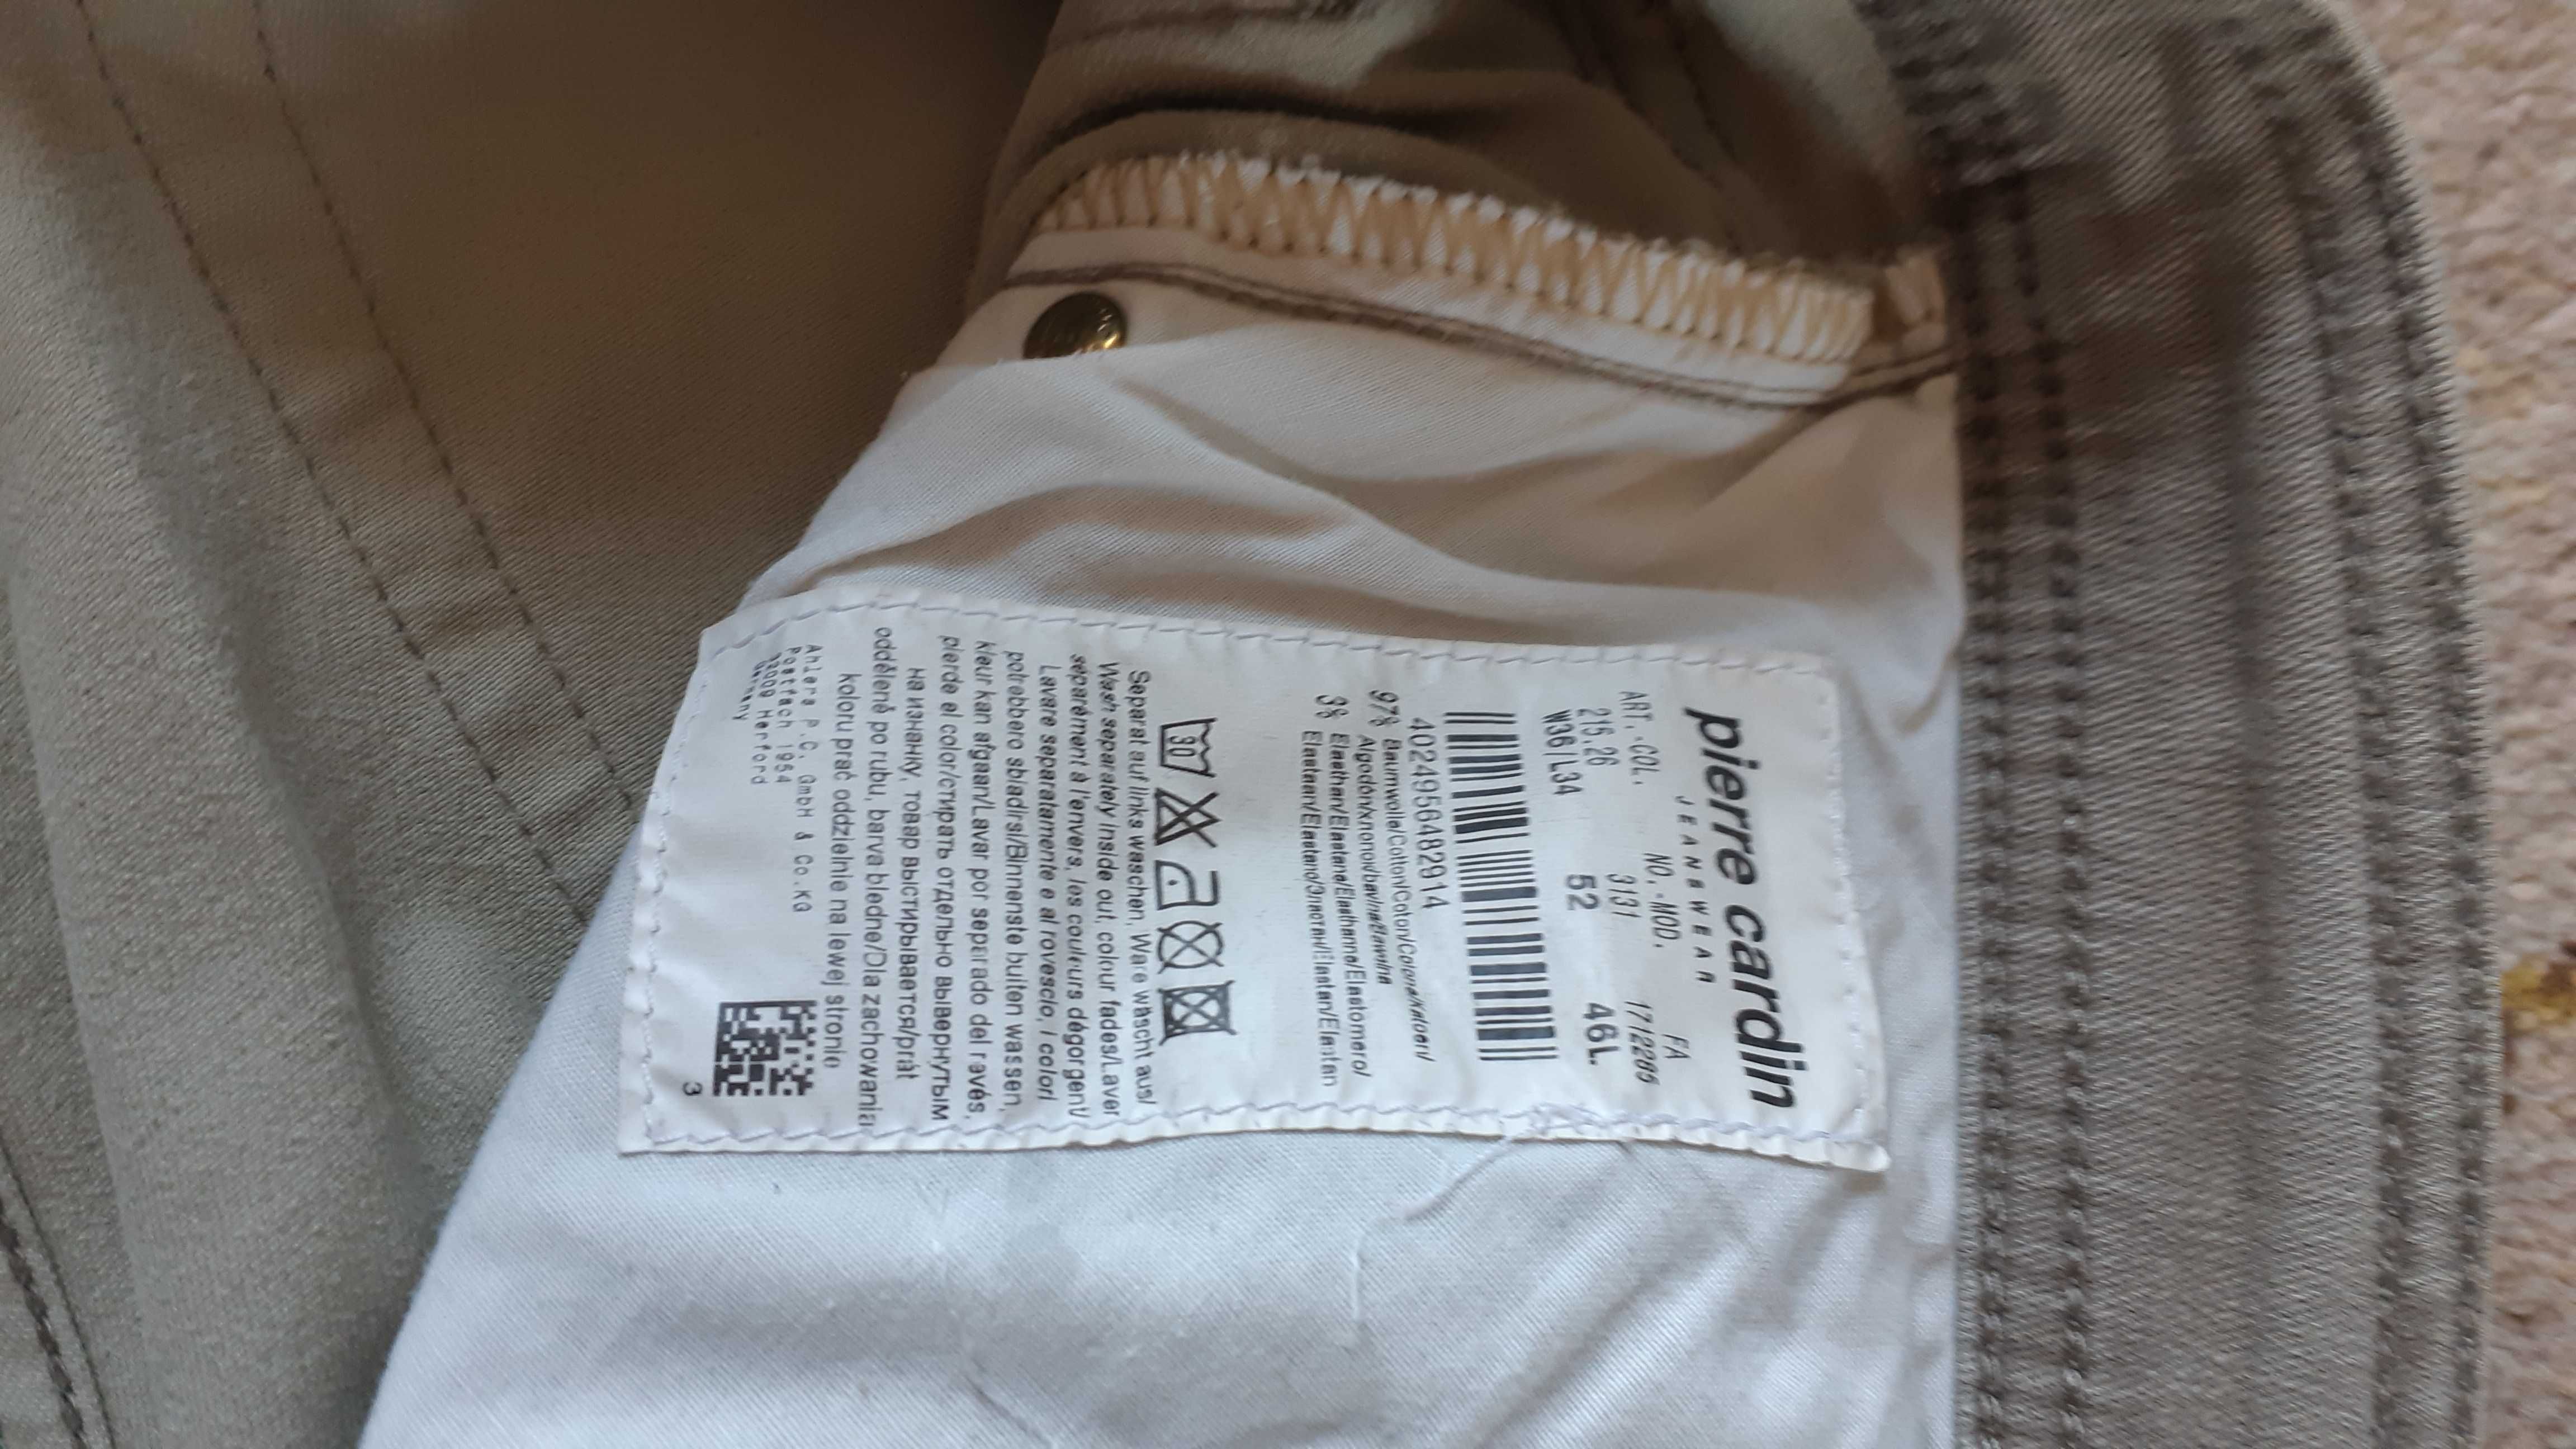 Pierre Cardin jeans 36/34 spodnie męskie